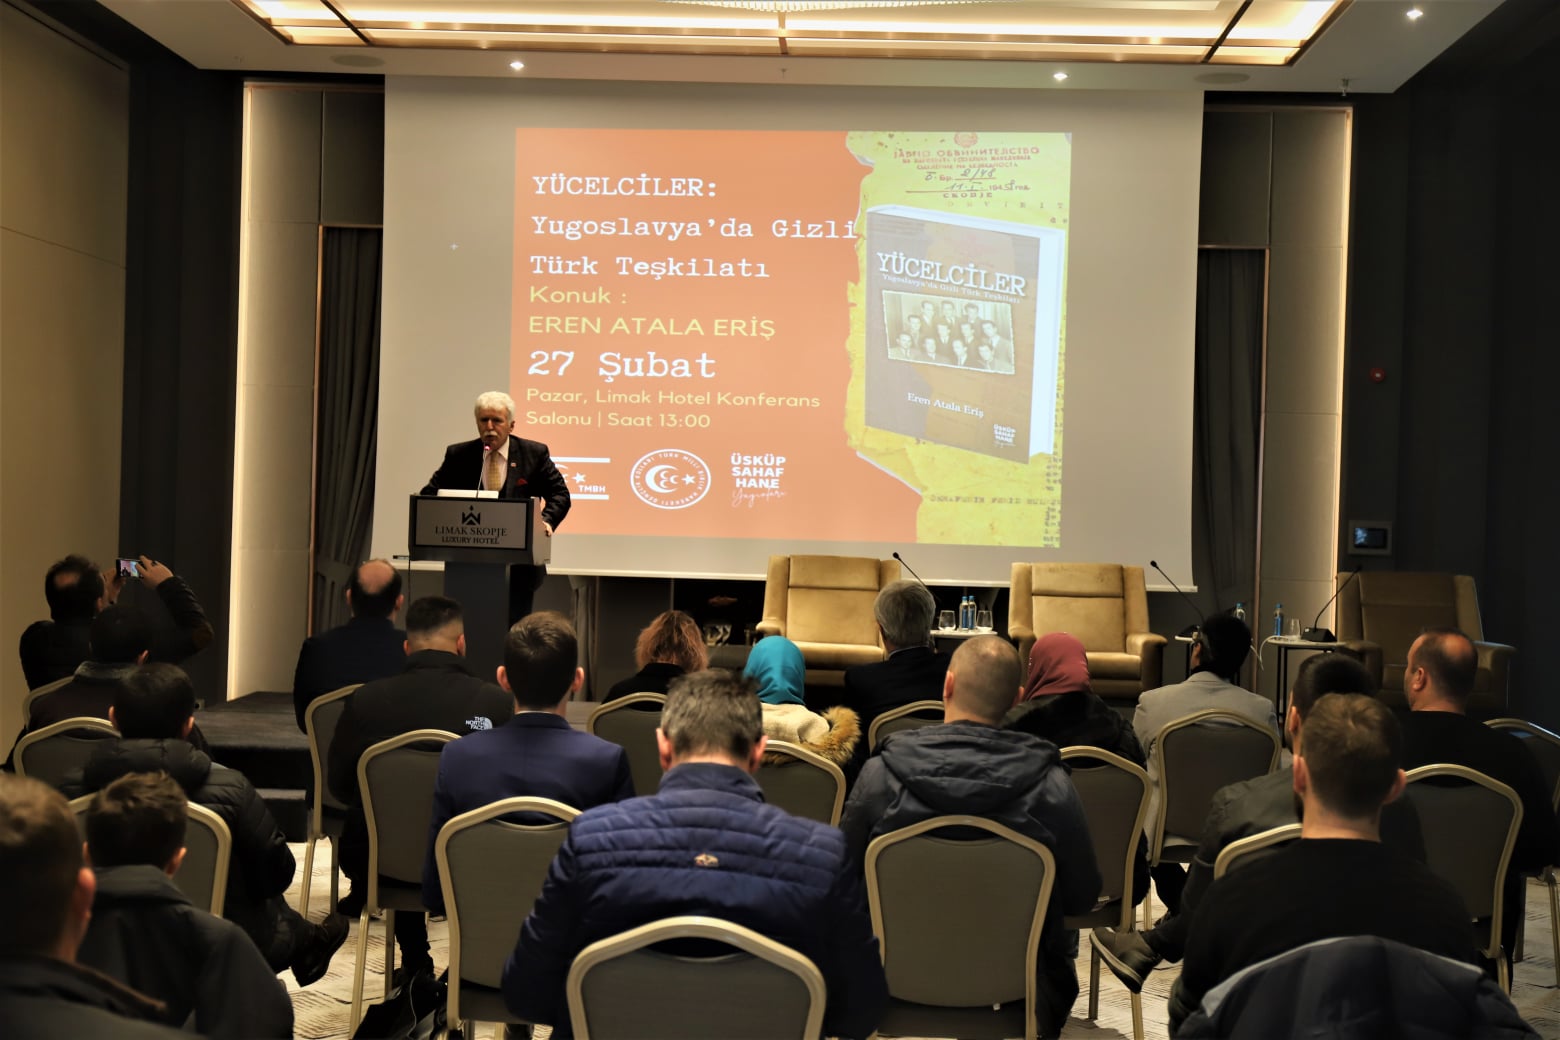 Üsküp’te “Yücelciler: Yugoslavya’da Gizli Türk Teşkilatı” konferansı düzenlendi